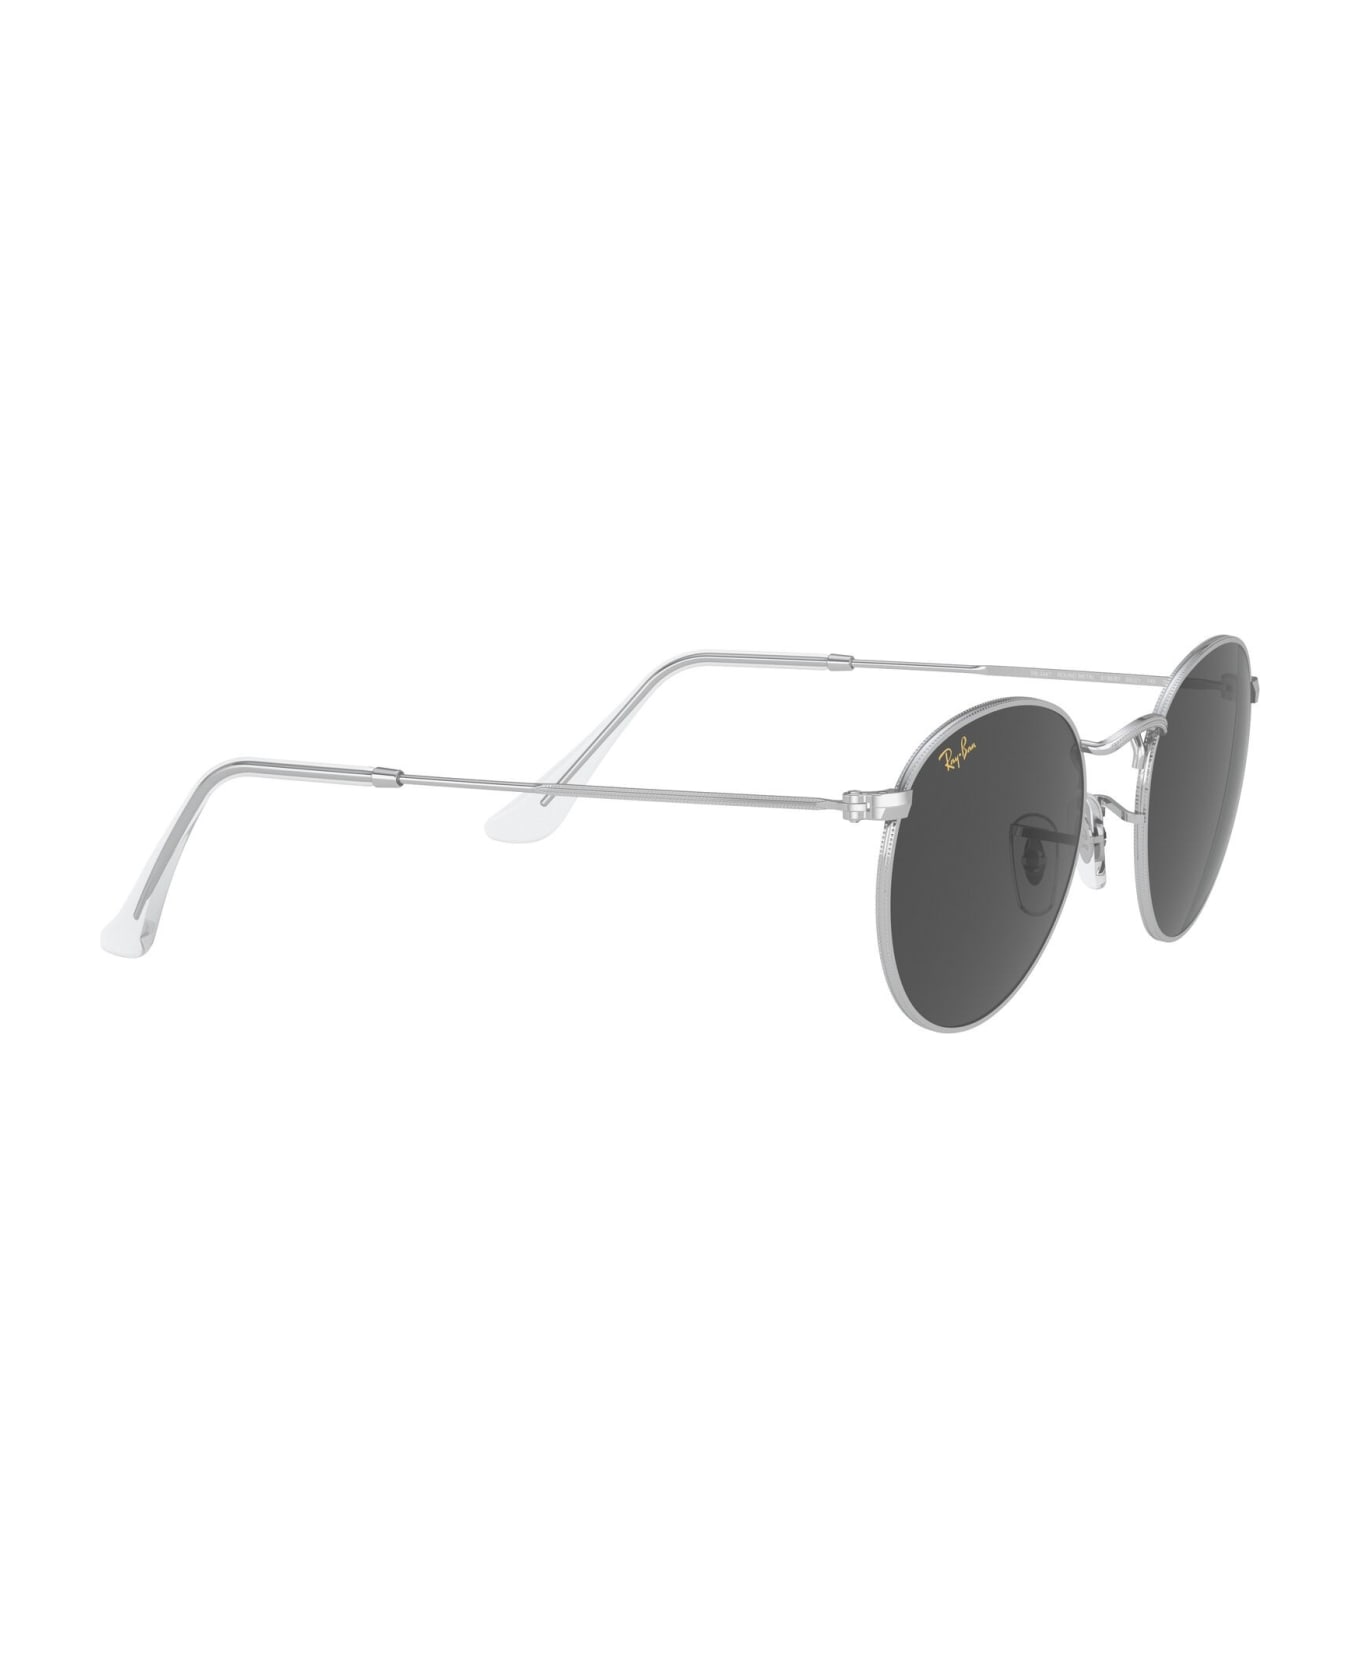 Ray-Ban Sunglasses - Silver/Grigio